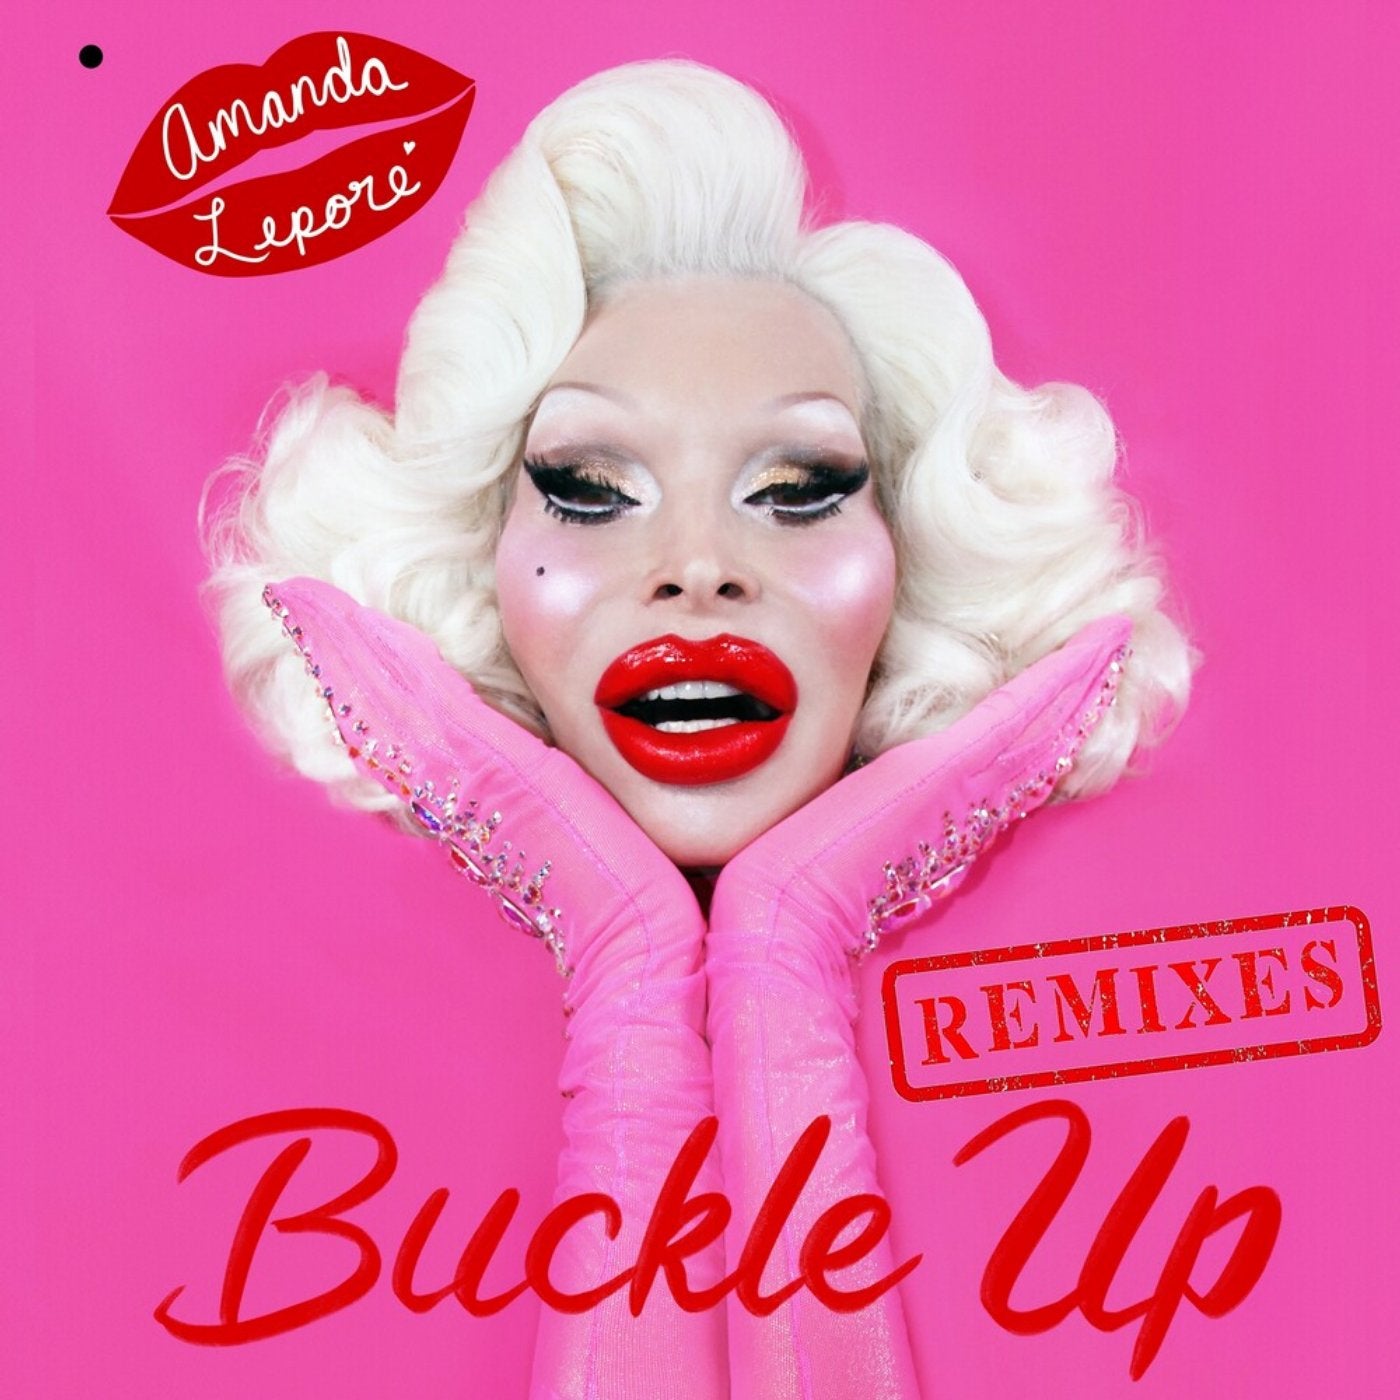 Buckle Up (Remixes)